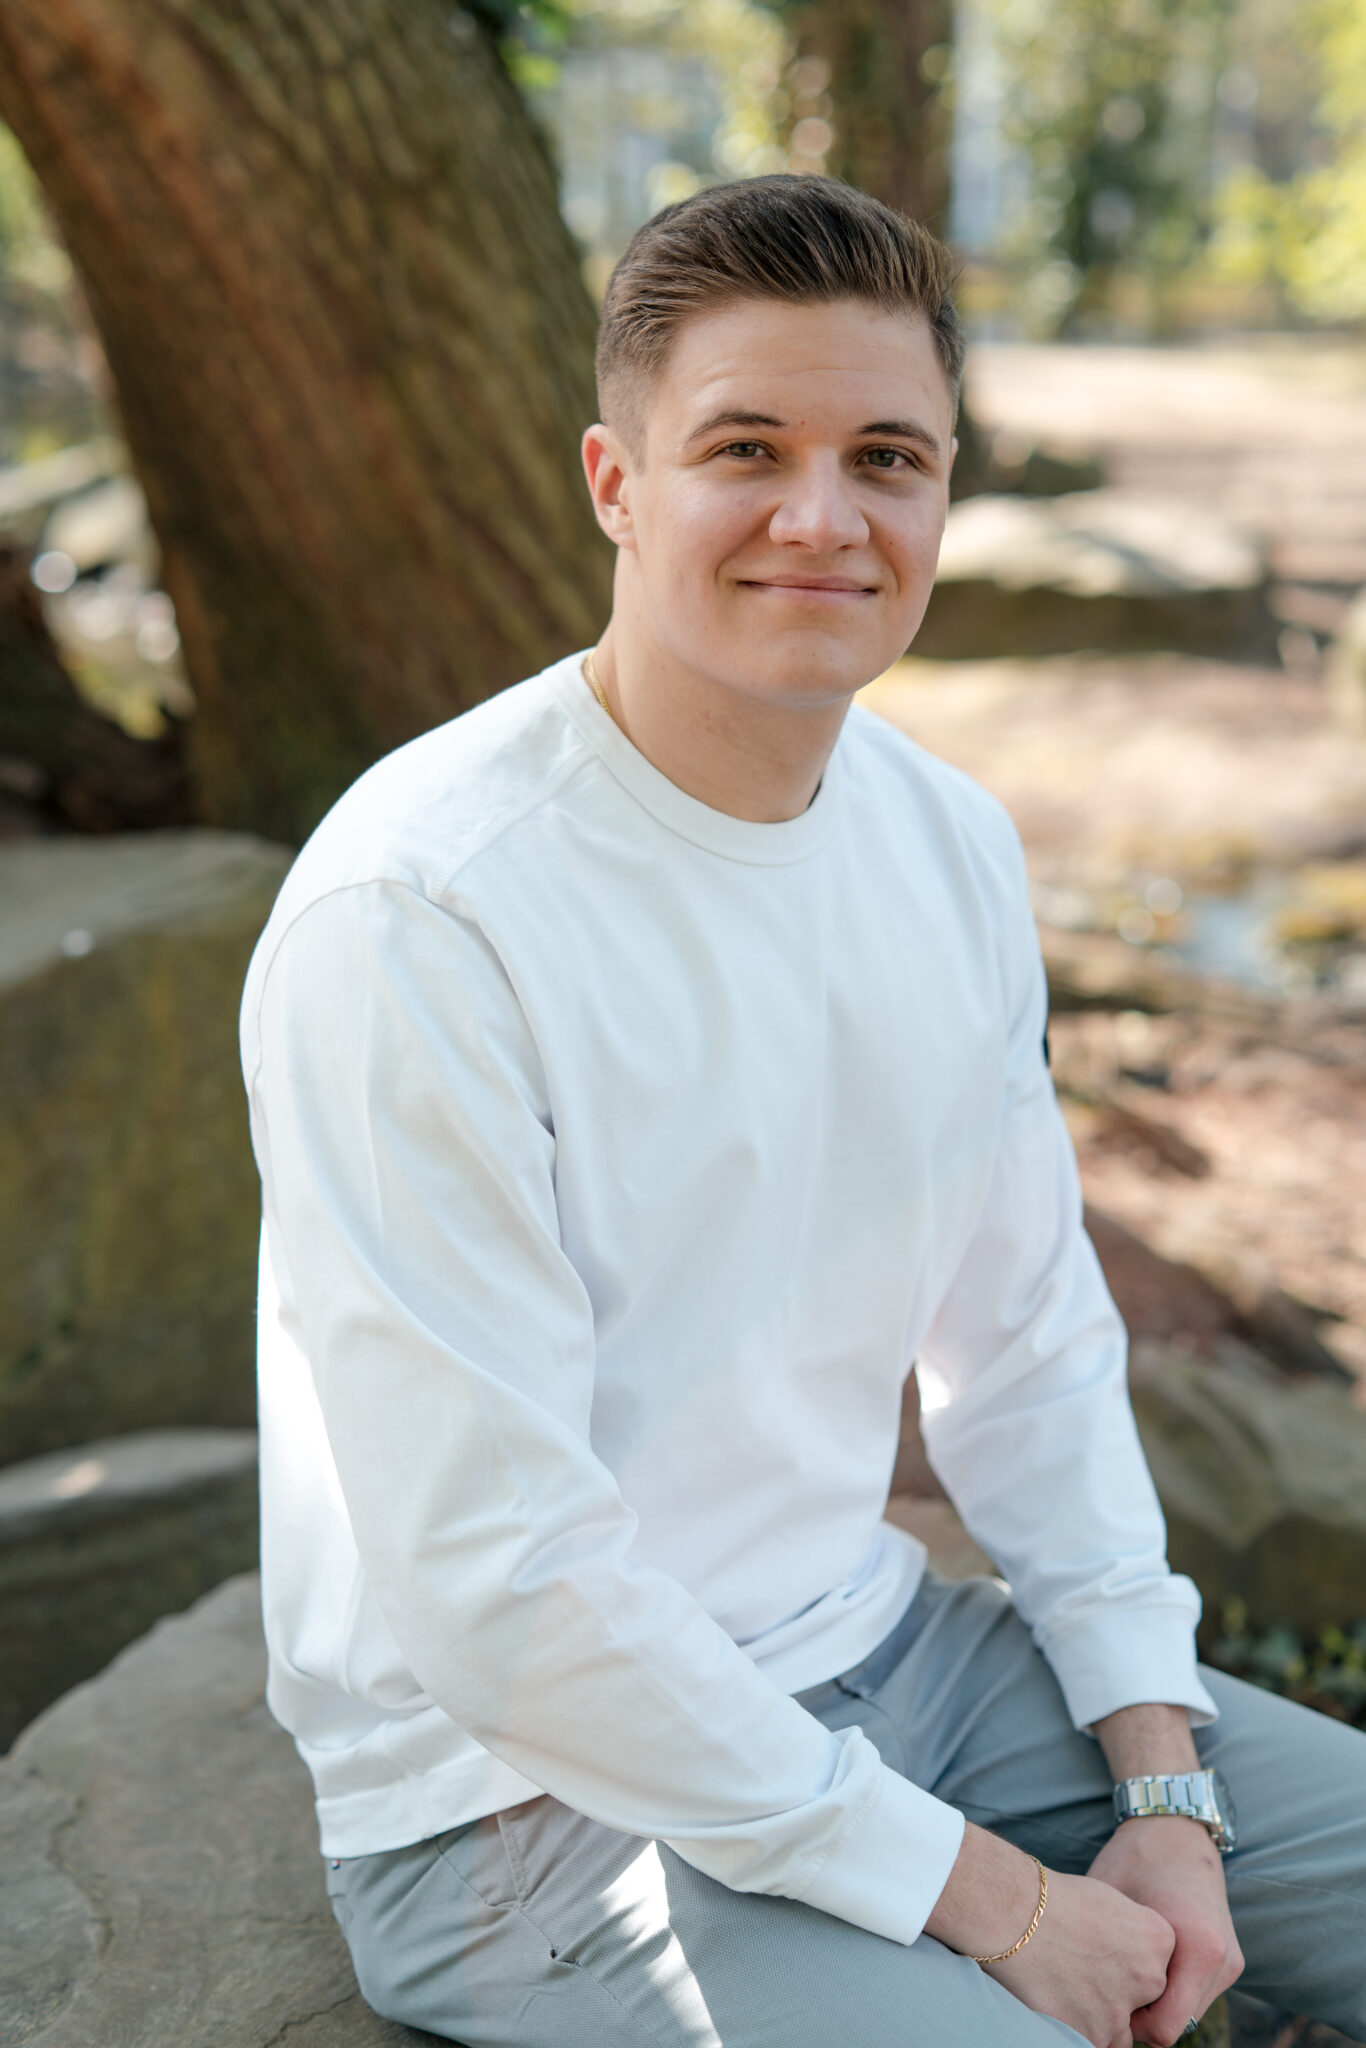 Portraitfoto von jungem Mann für Online-Dating